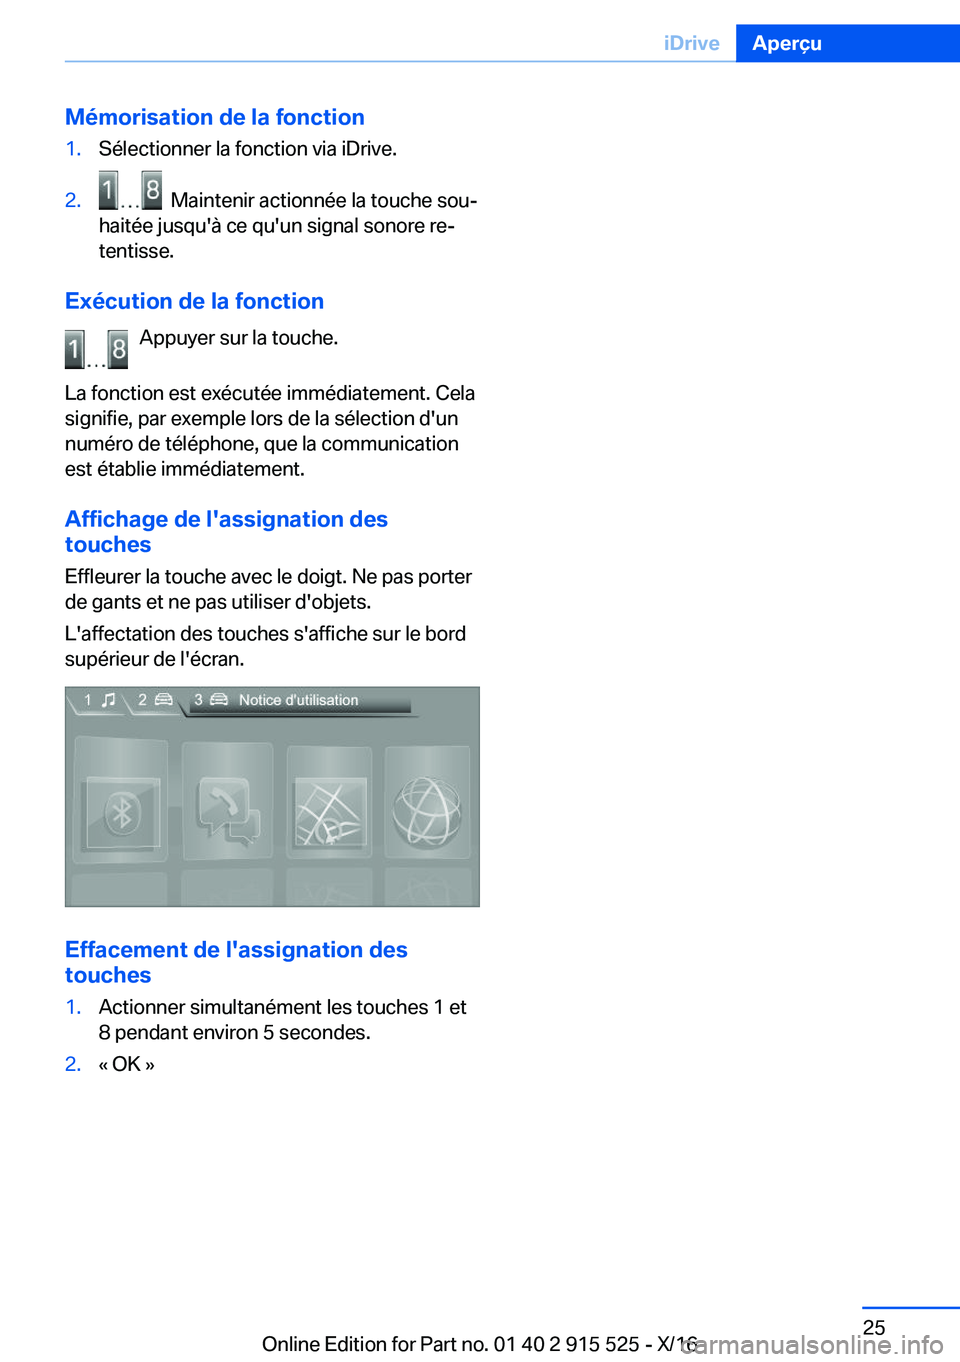 BMW X5 2017  Notices Demploi (in French) �M�é�m�o�r�i�s�a�t�i�o�n��d�e��l�a��f�o�n�c�t�i�o�n�1�.�S�é�l�e�c�t�i�o�n�n�e�r� �l�a� �f�o�n�c�t�i�o�n� �v�i�a� �i�D�r�i�v�e�.�2�.� � �M�a�i�n�t�e�n�i�r� �a�c�t�i�o�n�n�é�e� �l�a� �t�o�u�c�h�e�